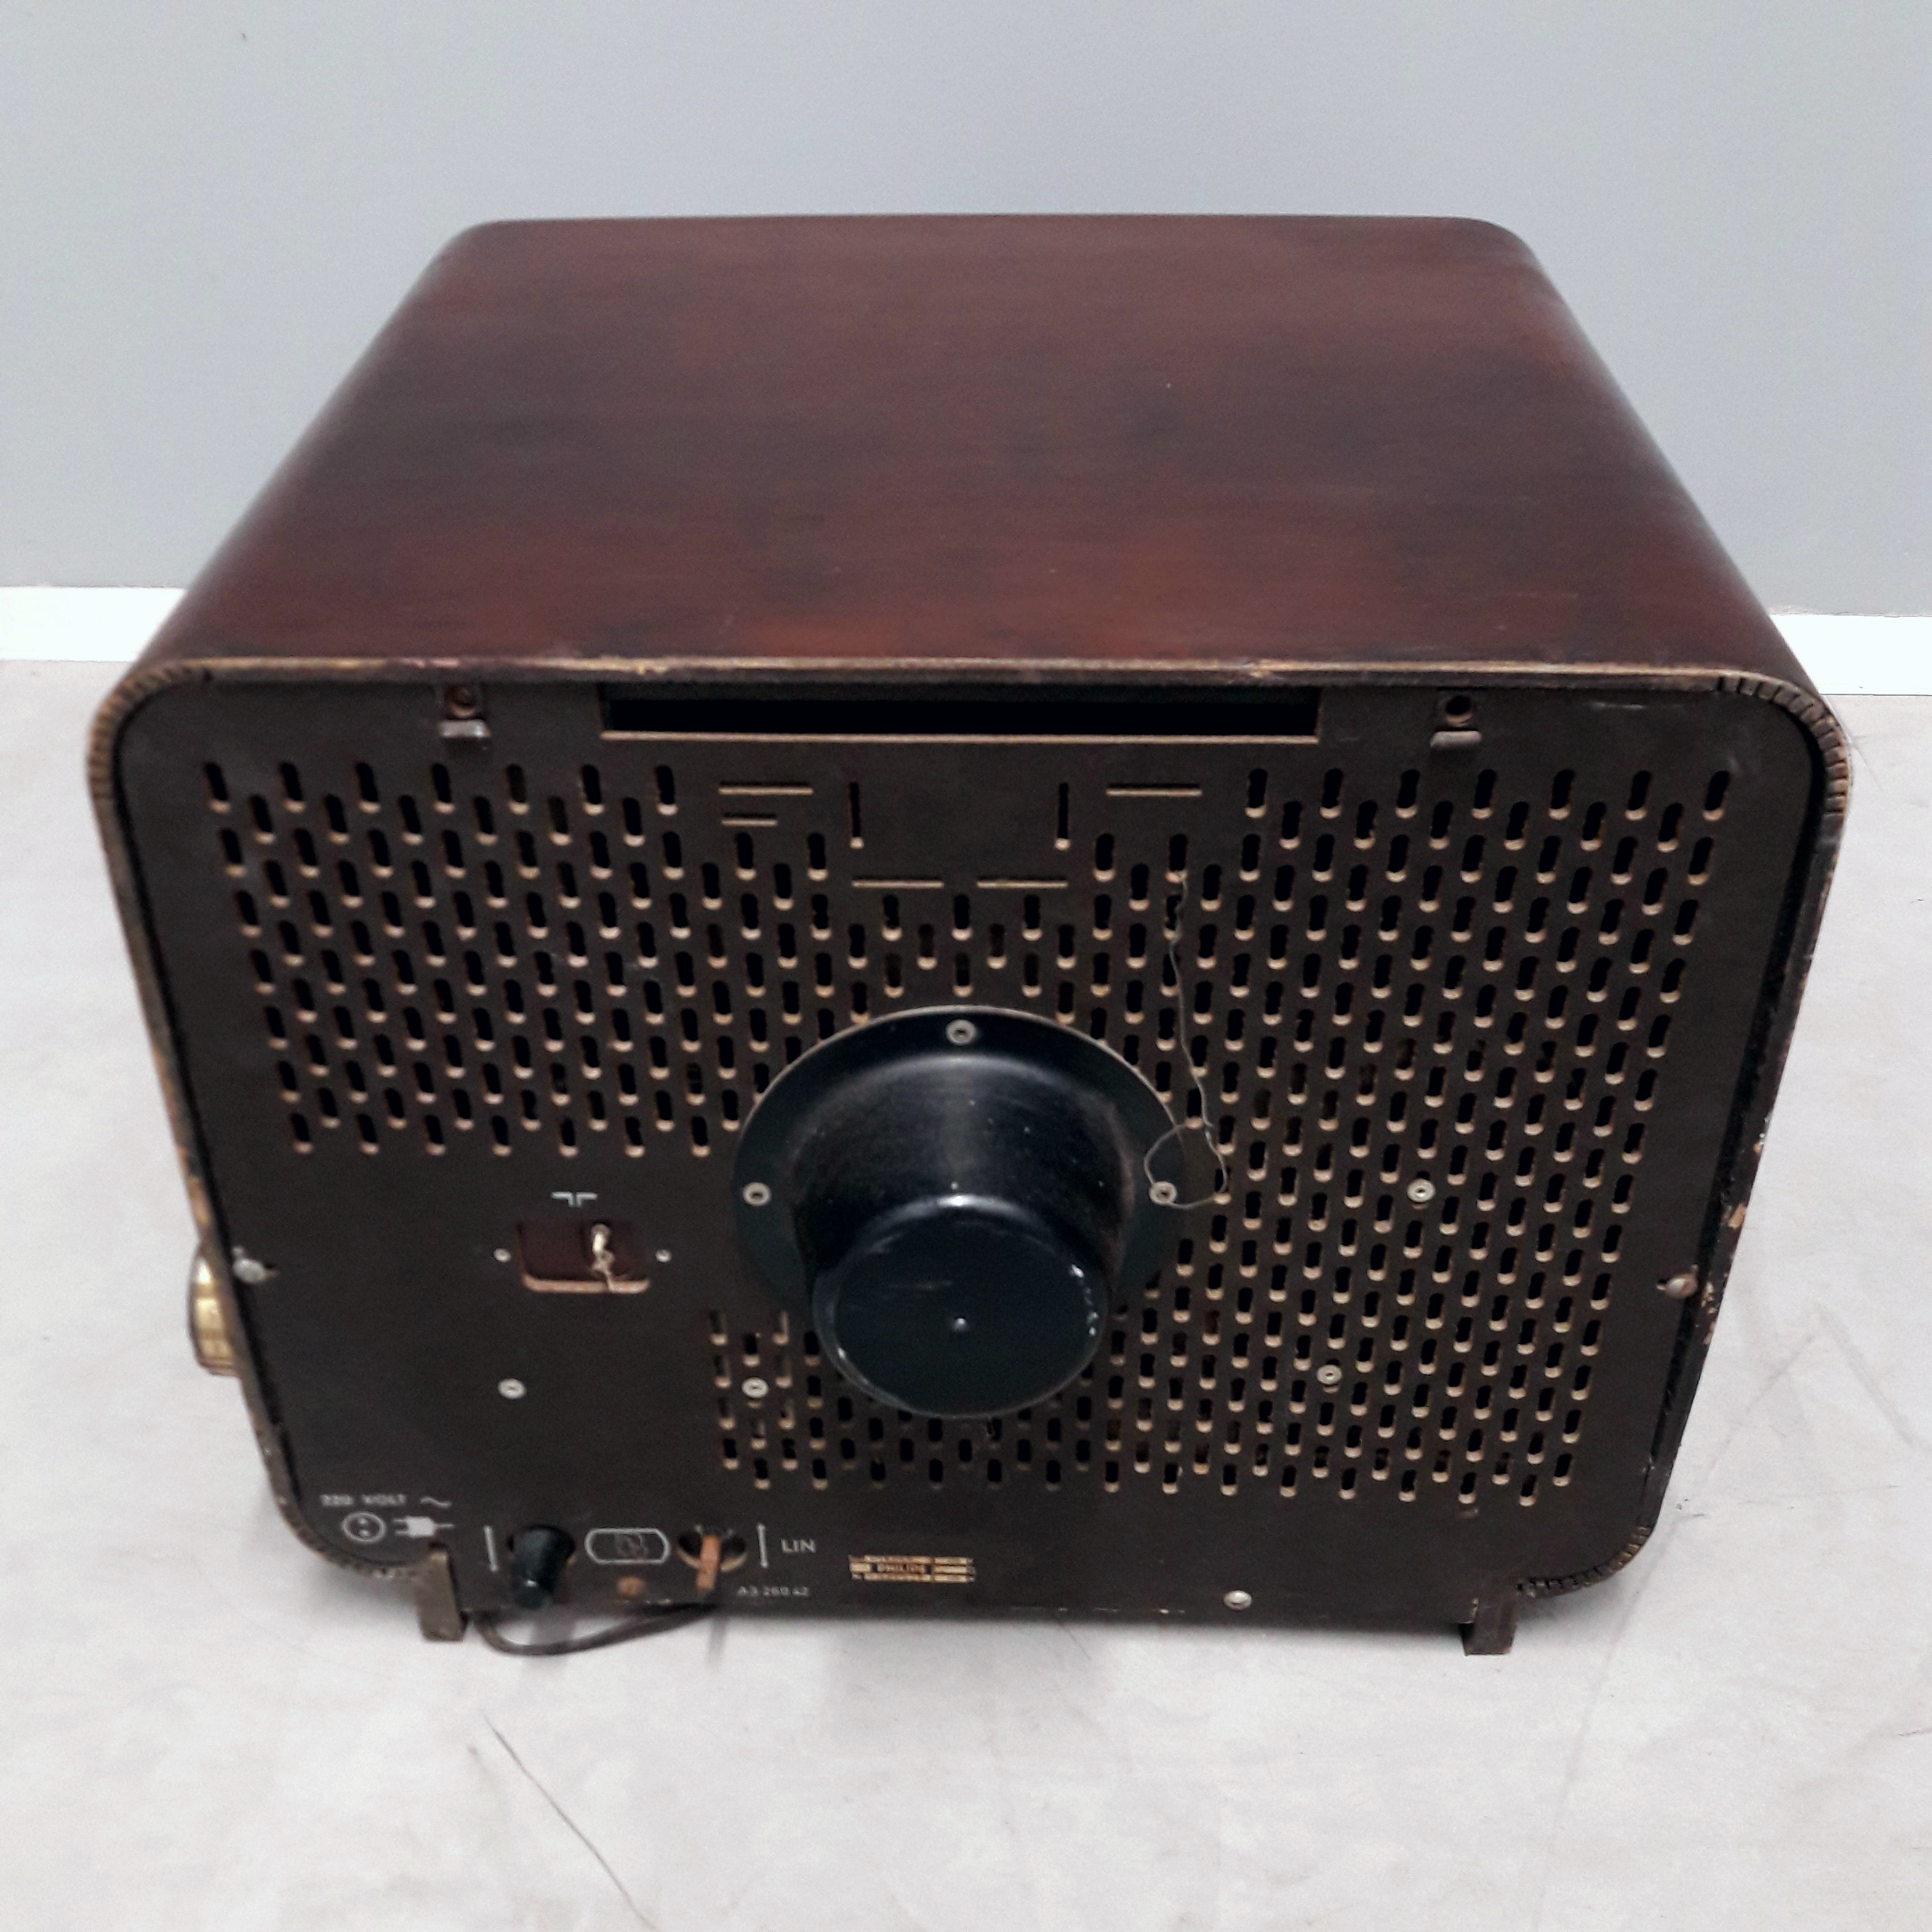 Philips televisie 17TX210A uit 1959